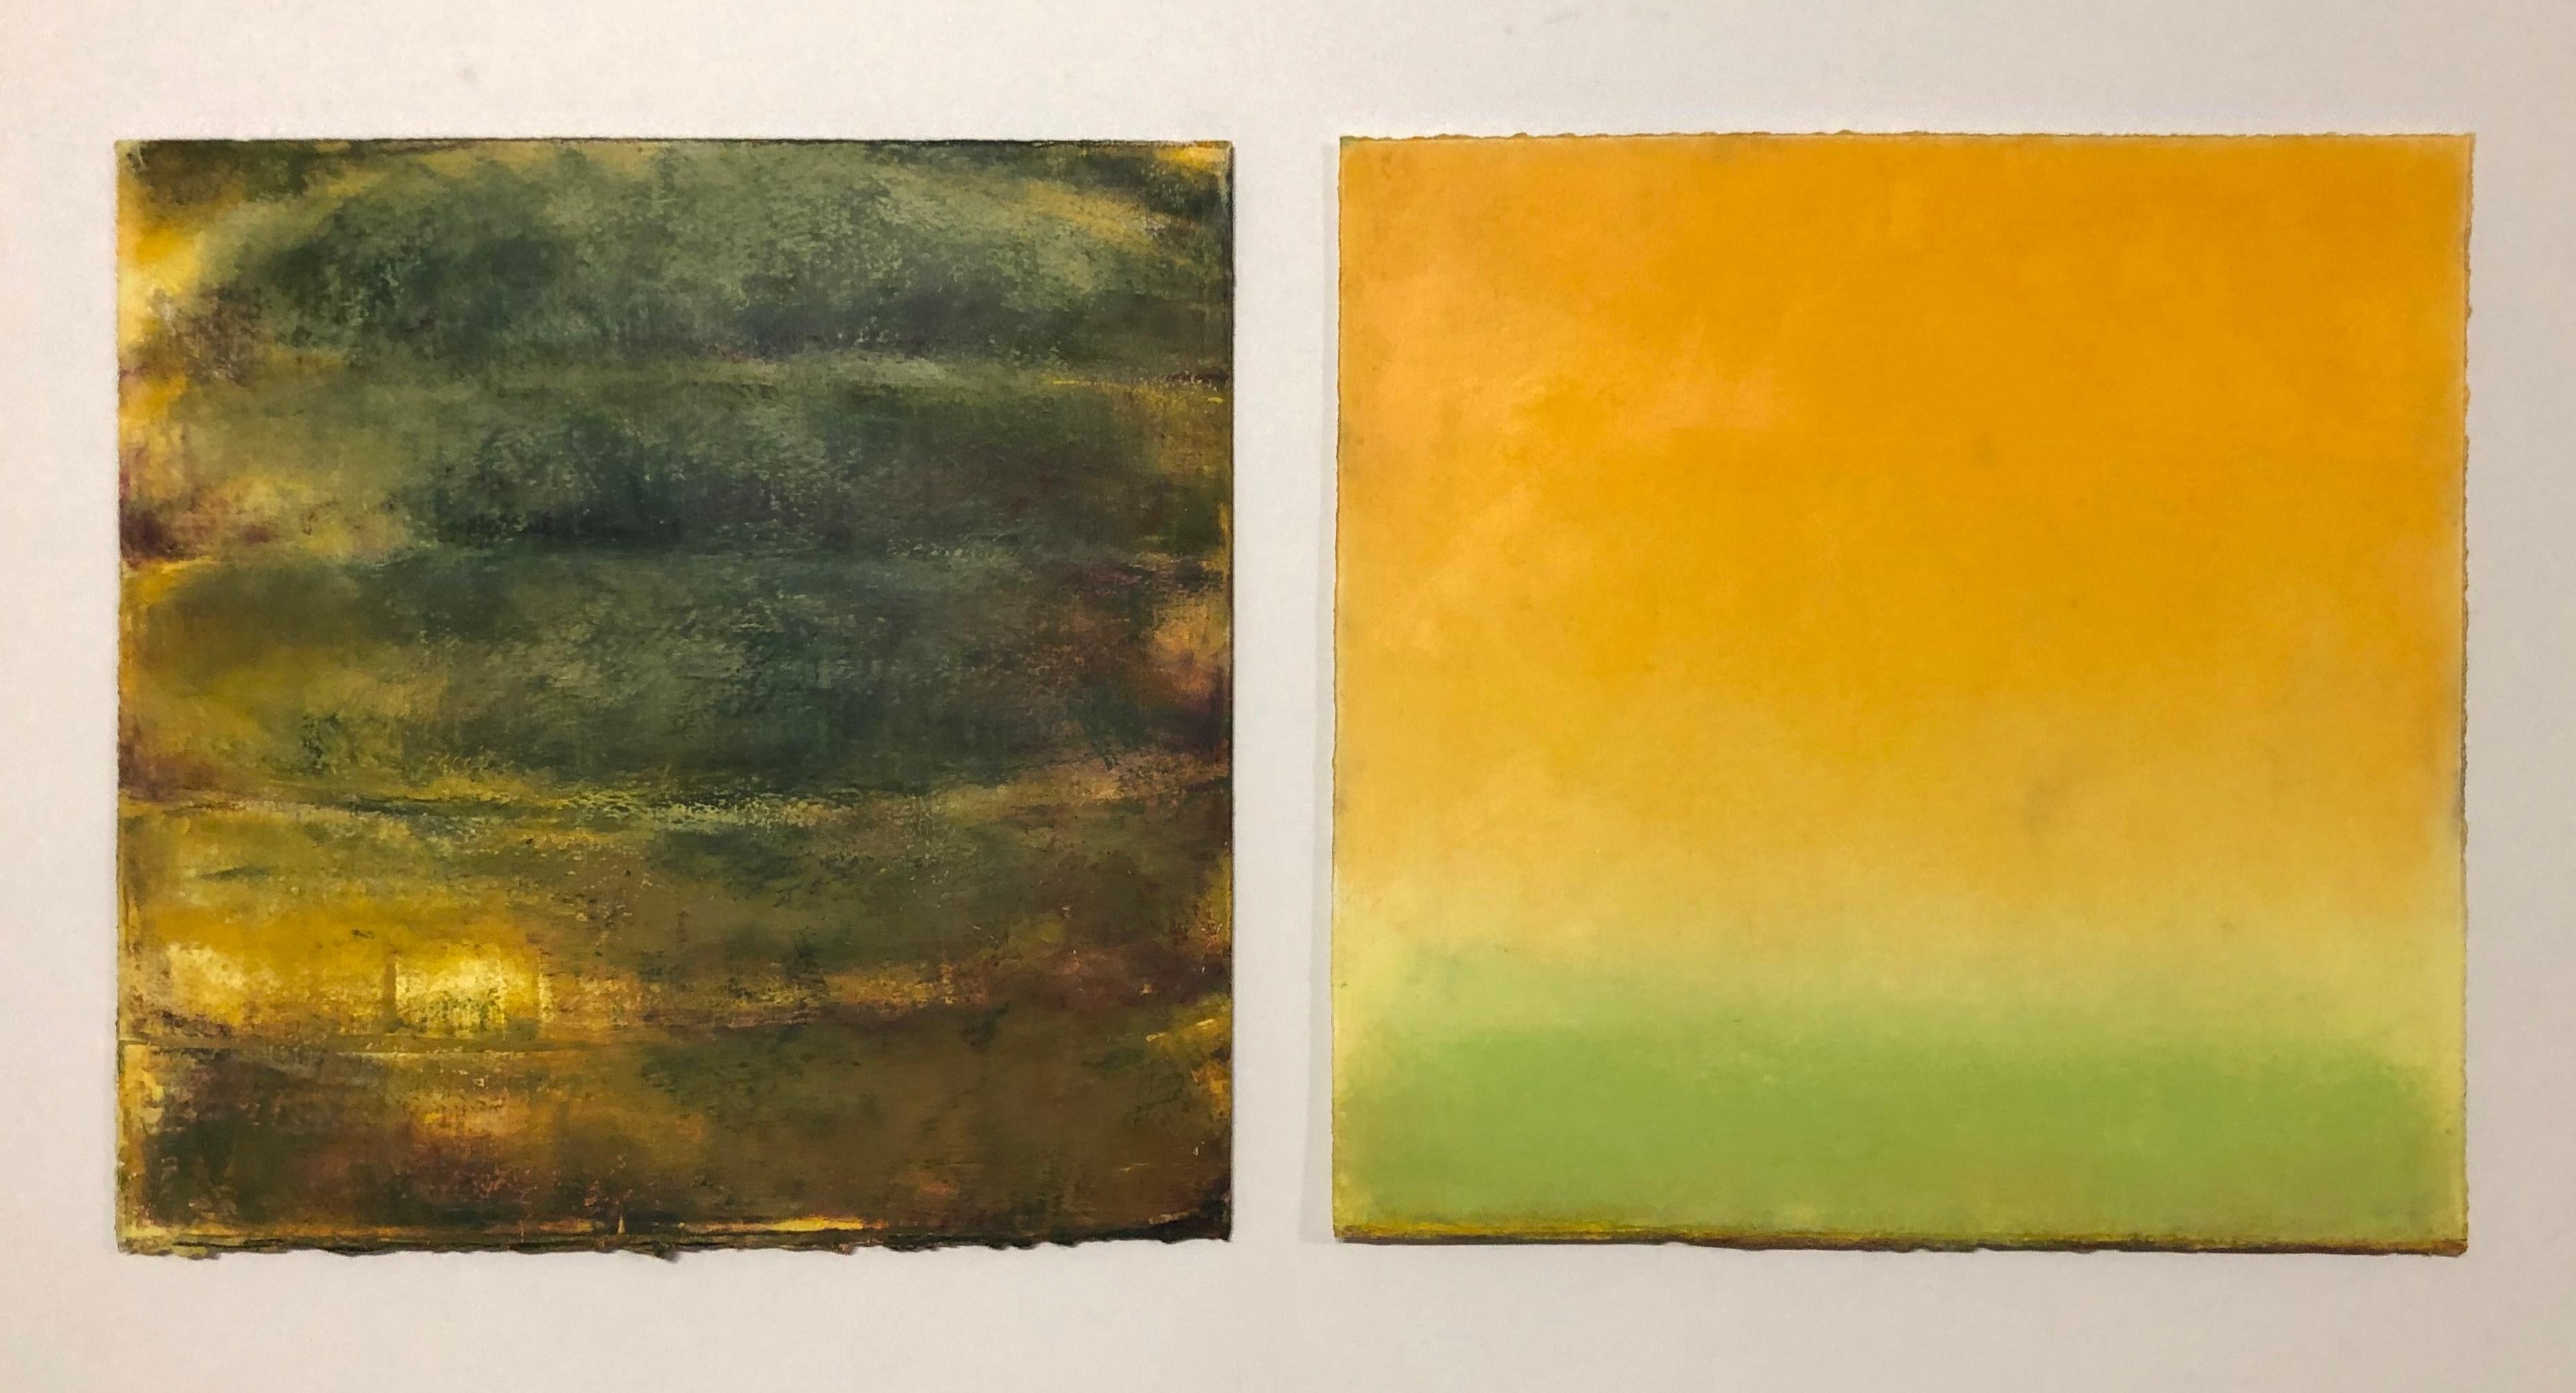 Nature morte abstraite à l'huile pastel vert et orange « Amy's Colossal », 2019